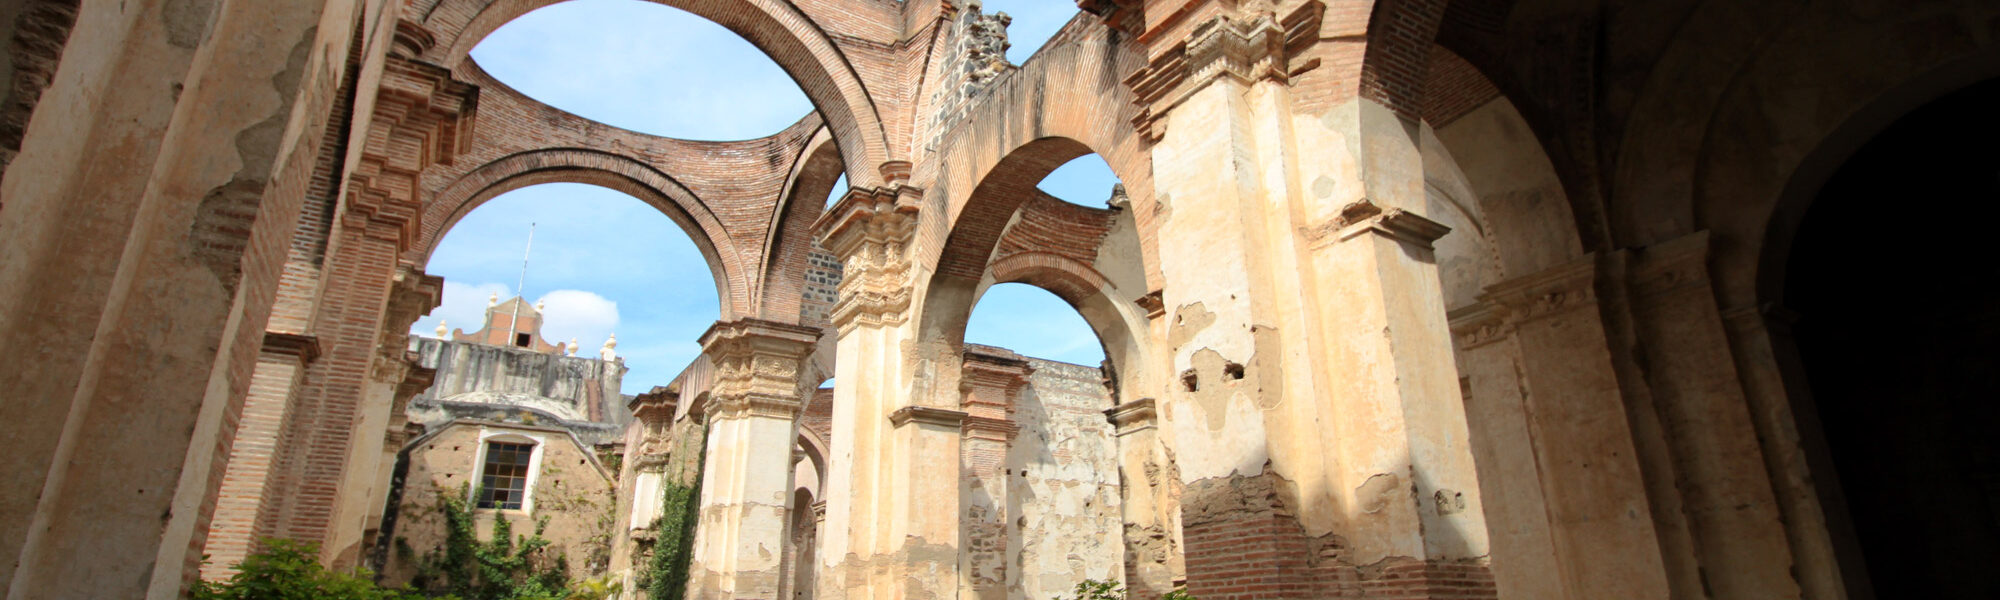 De ruïnes van Antigua - Catedral de Santiago